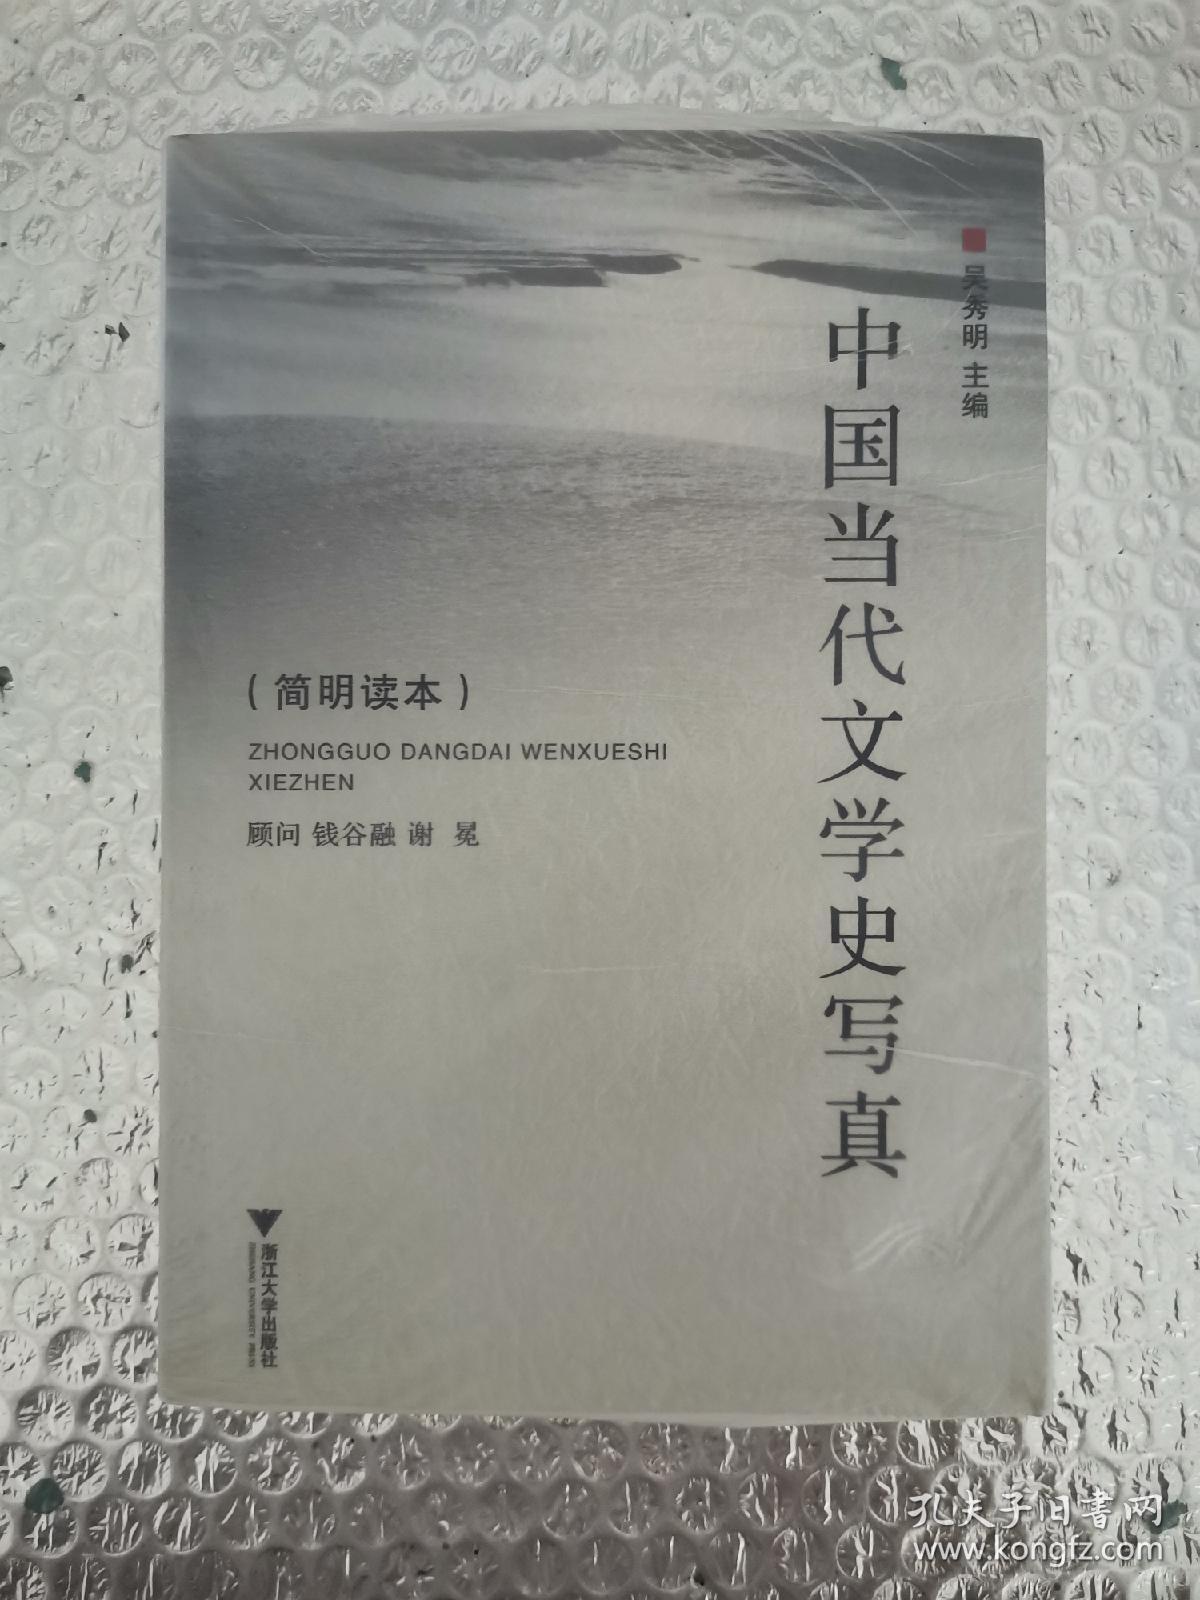 中国当代文学史写真